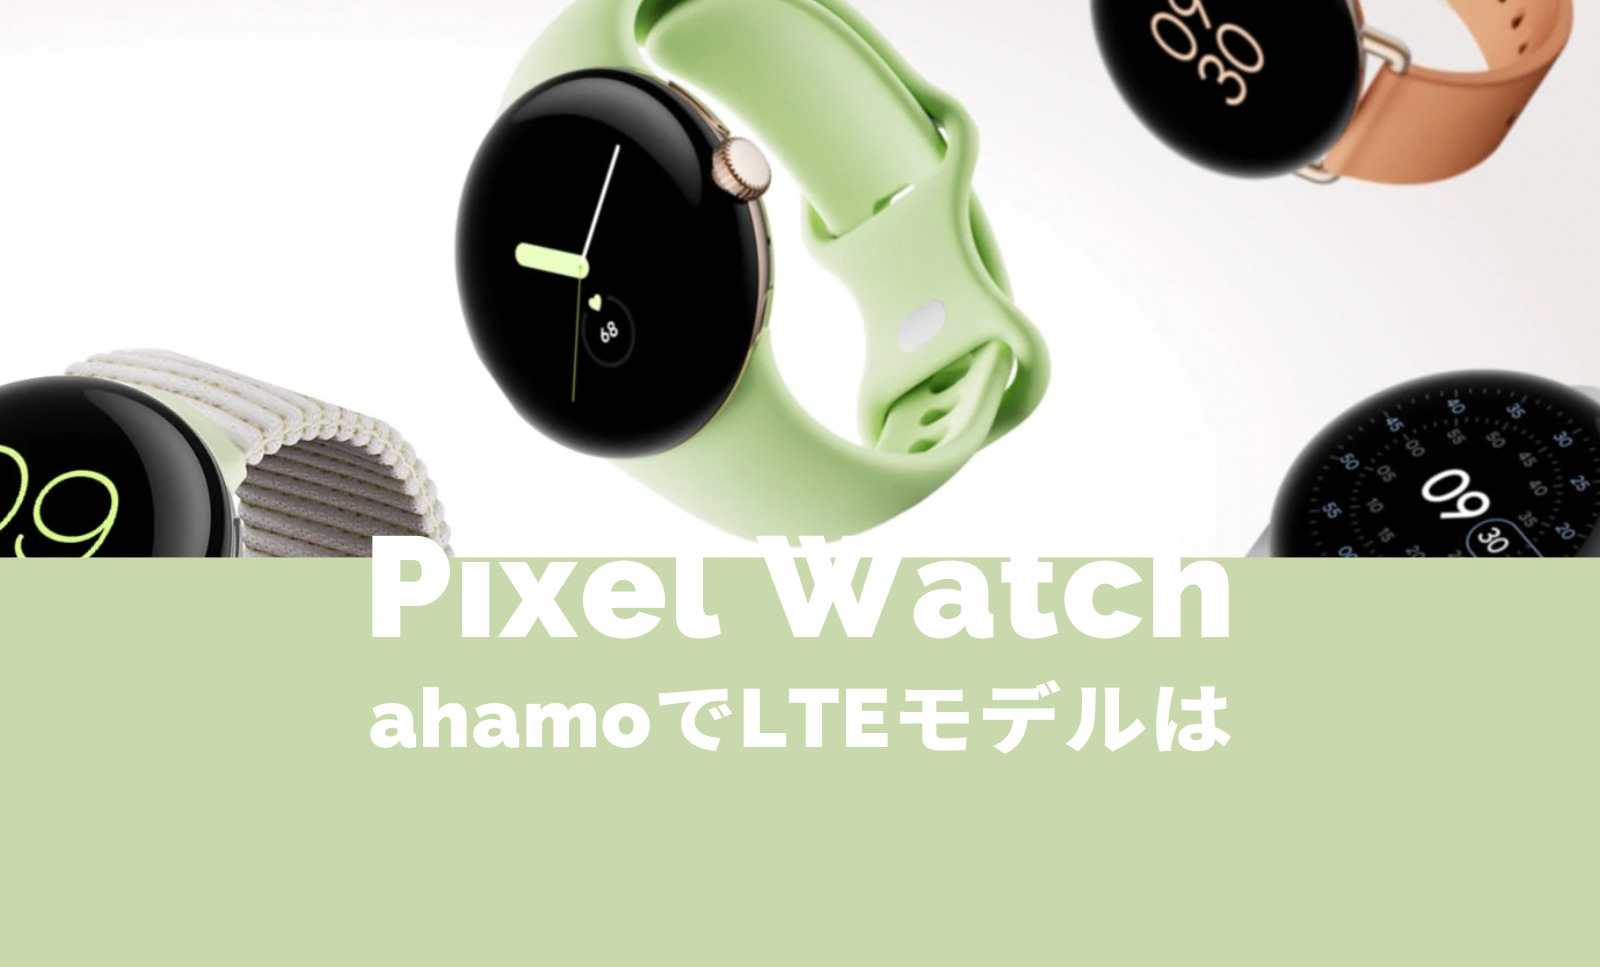 Pixel Watch 2(ピクセルウォッチ)はahamo(アハモ)で使える？LTEモデルは？【Google】のサムネイル画像